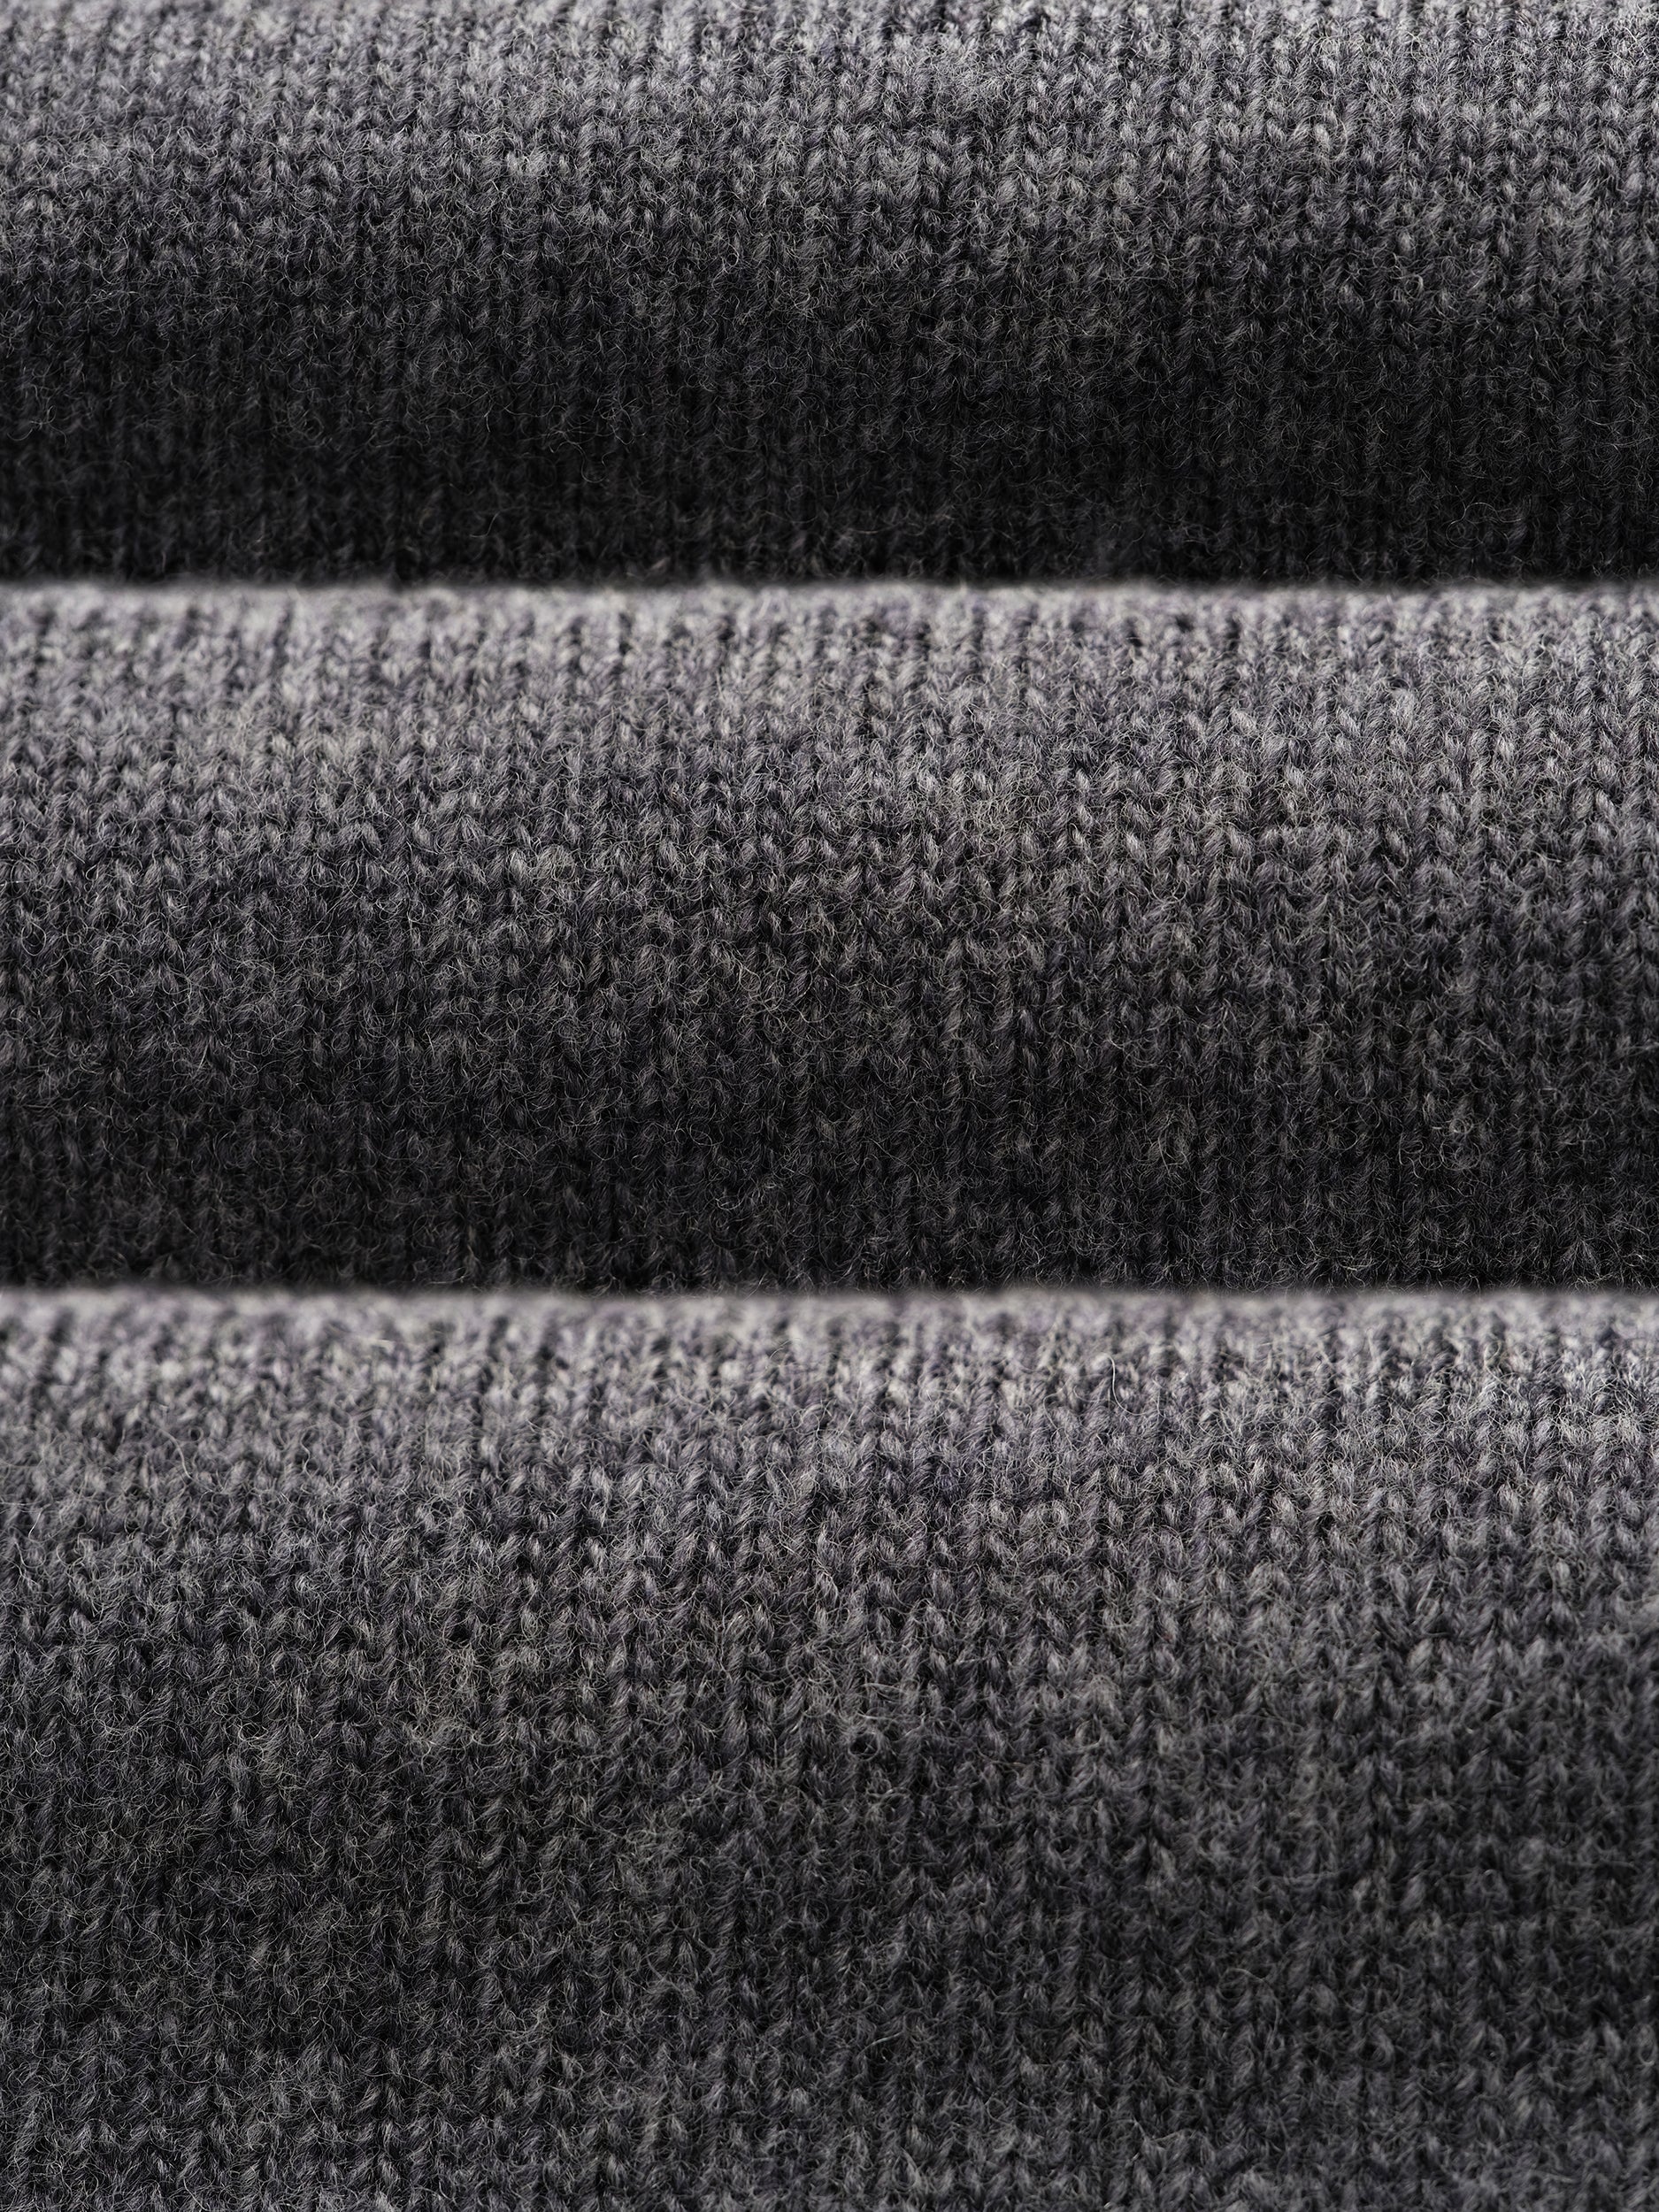 Grey Melange Knitted Crewneck Sweater - Oscar Hunt